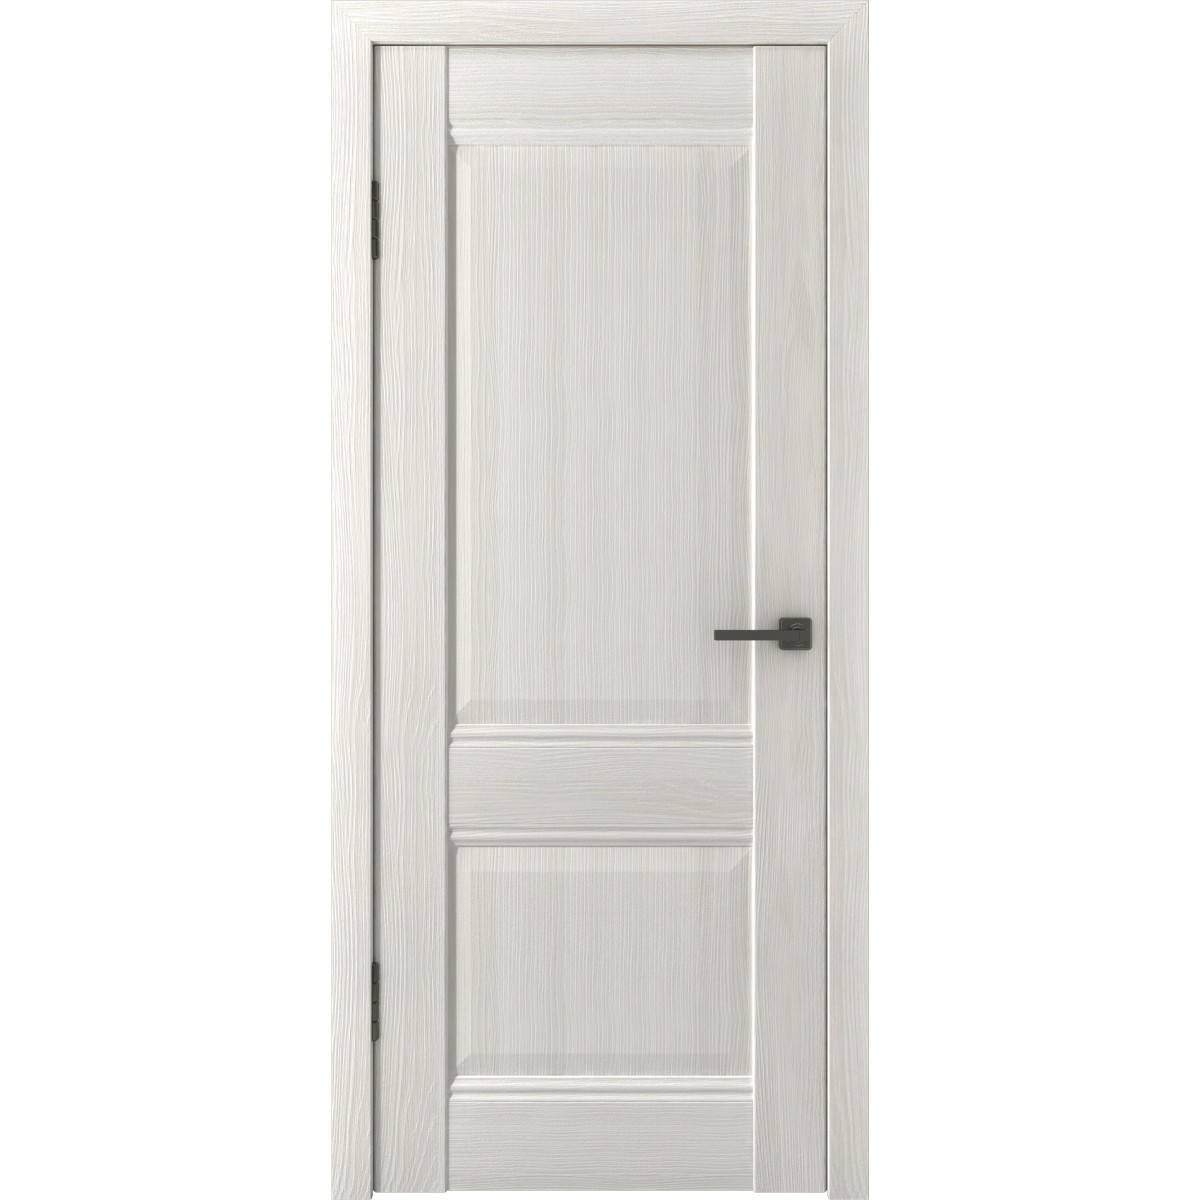 Дверь межкомнатная глухая с замком и петлями в комплекте Классик 2 90x200 см ПП цвет белёный дуб